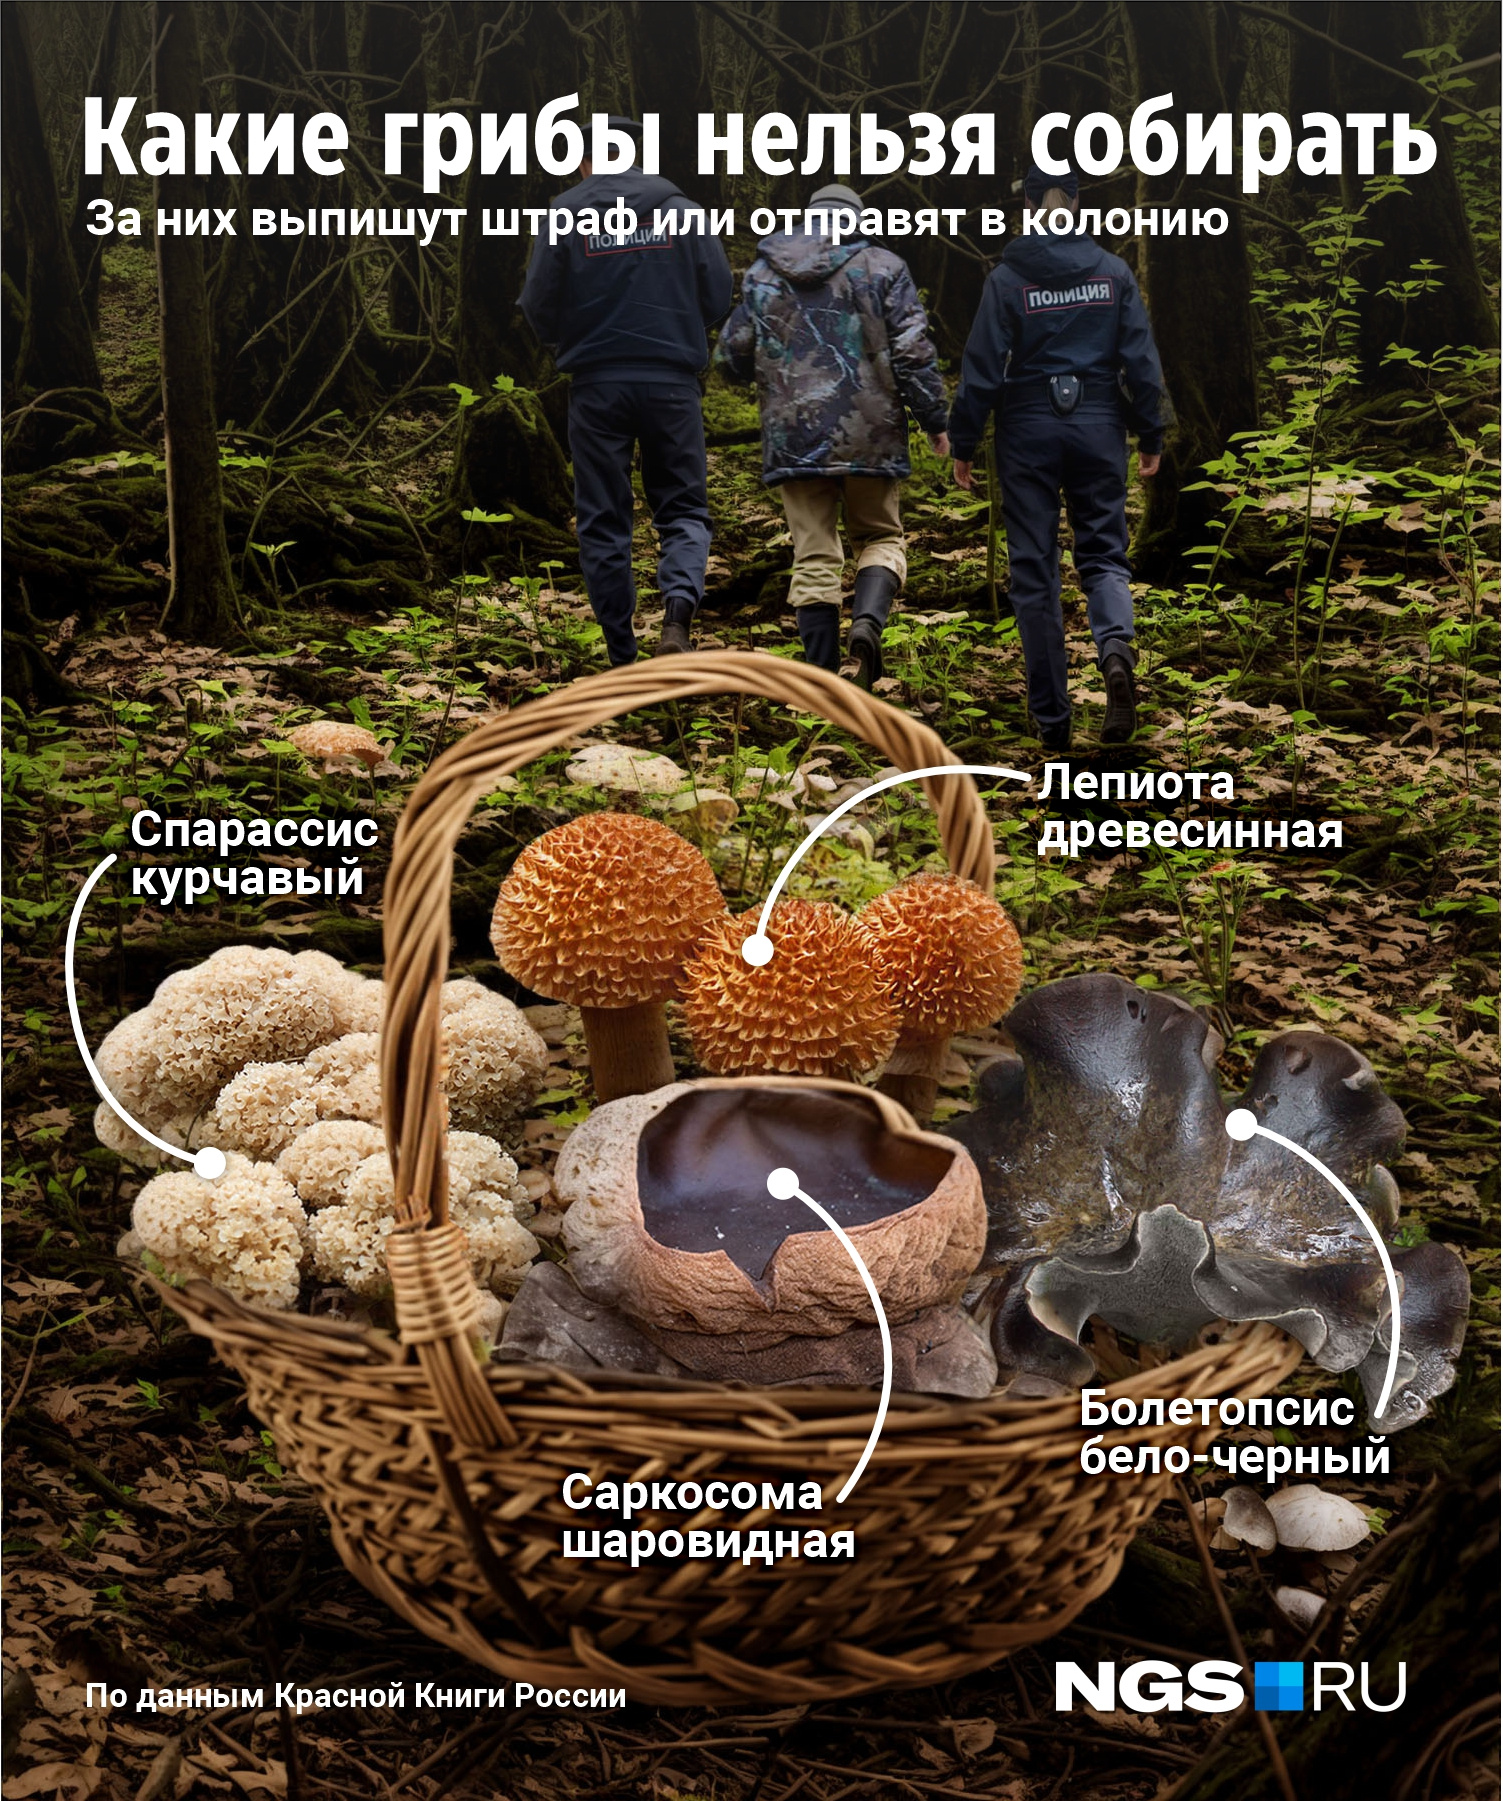 В Новосибирской области нужно запомнить 4 запрещенных к сбору гриба из Красной книги России